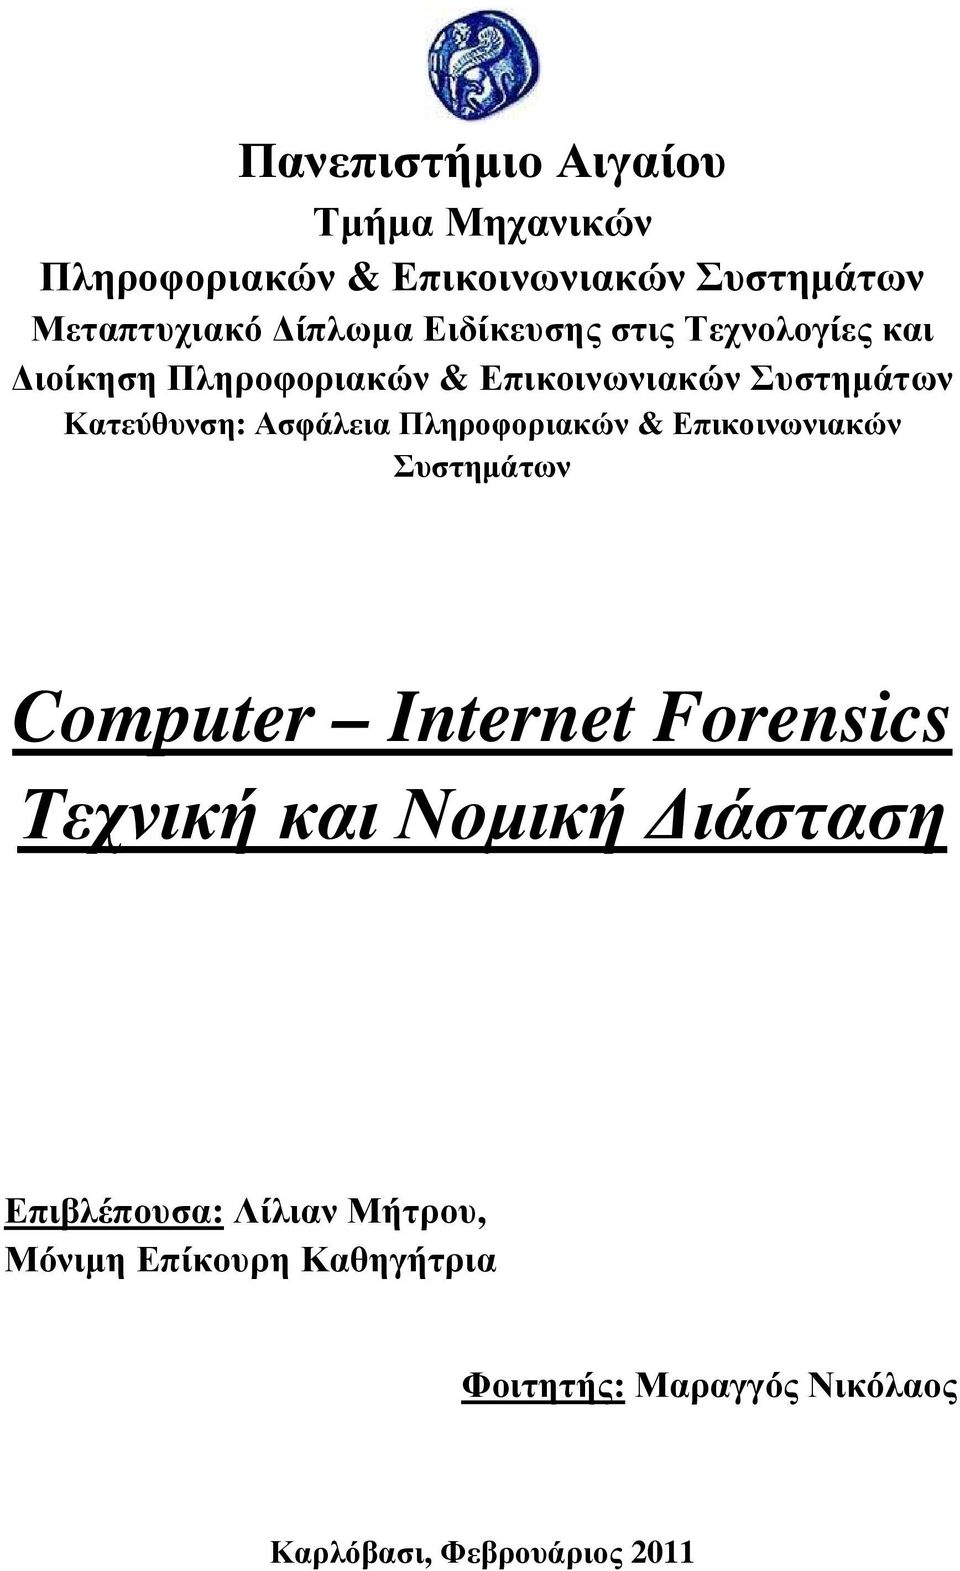 Πληροφοριακών & Επικοινωνιακών Συστηµάτων Computer Internet Forensics Τεχνική και Νοµική ιάσταση